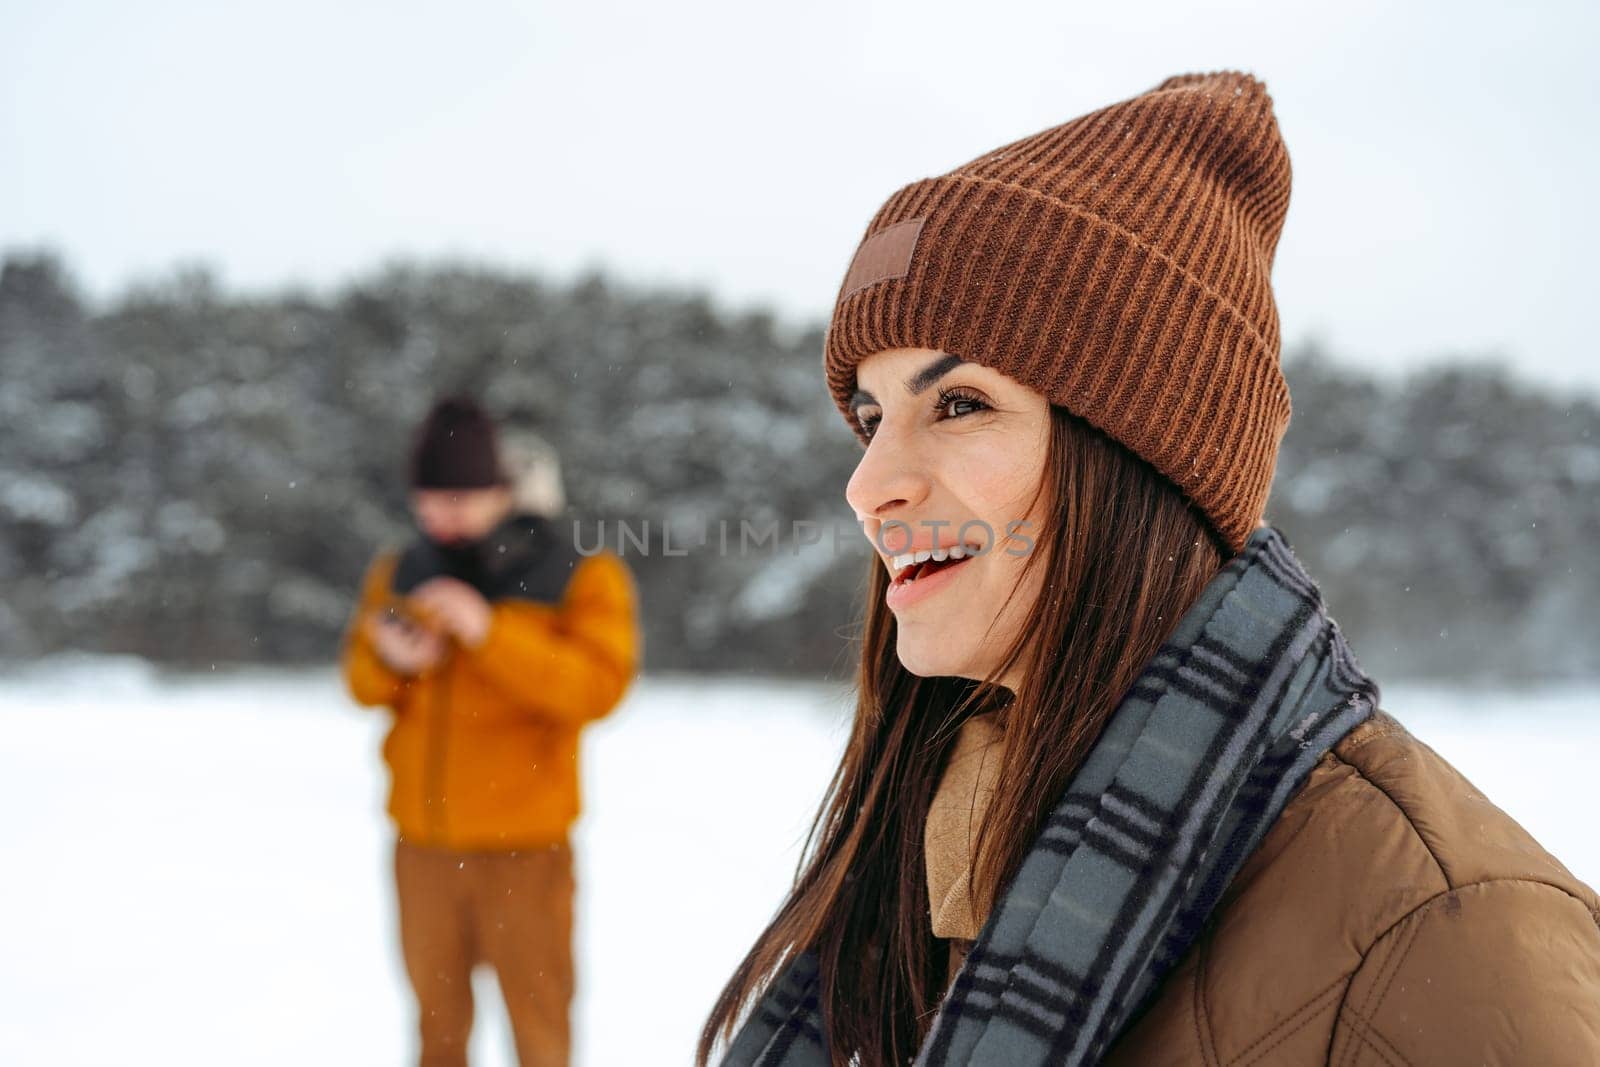 Woman in winter warm jacket walking in snowy winter forest by Fabrikasimf